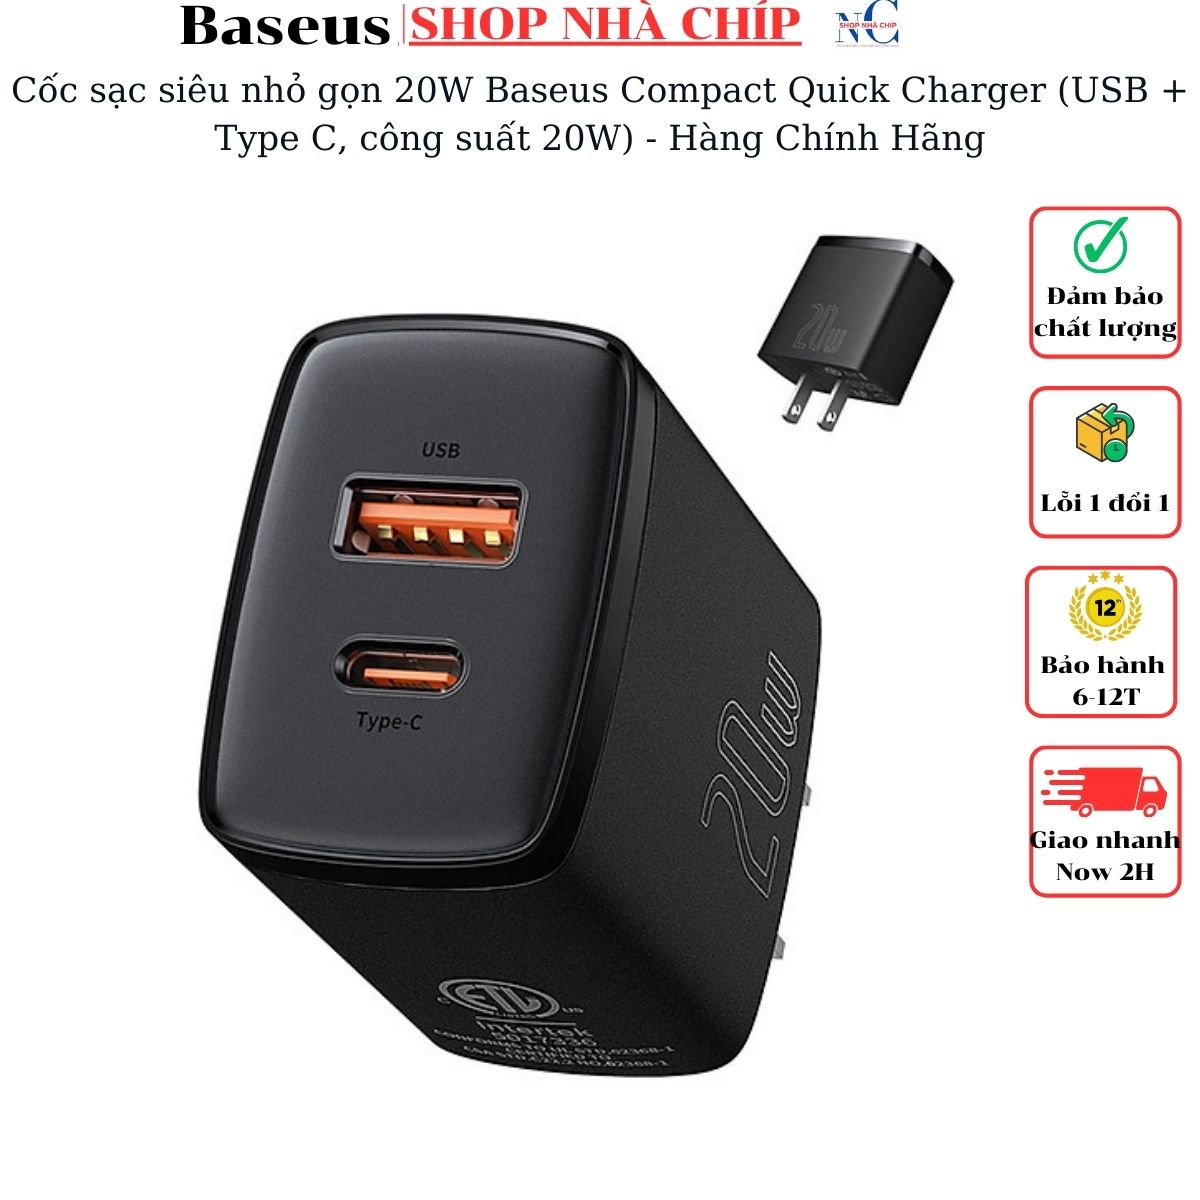 Hình ảnh Cốc sạc siêu nhỏ gọn 20W Baseus Compact Quick Charger (USB + Type C, công suất 20W) - Hàng Chính Hãng 